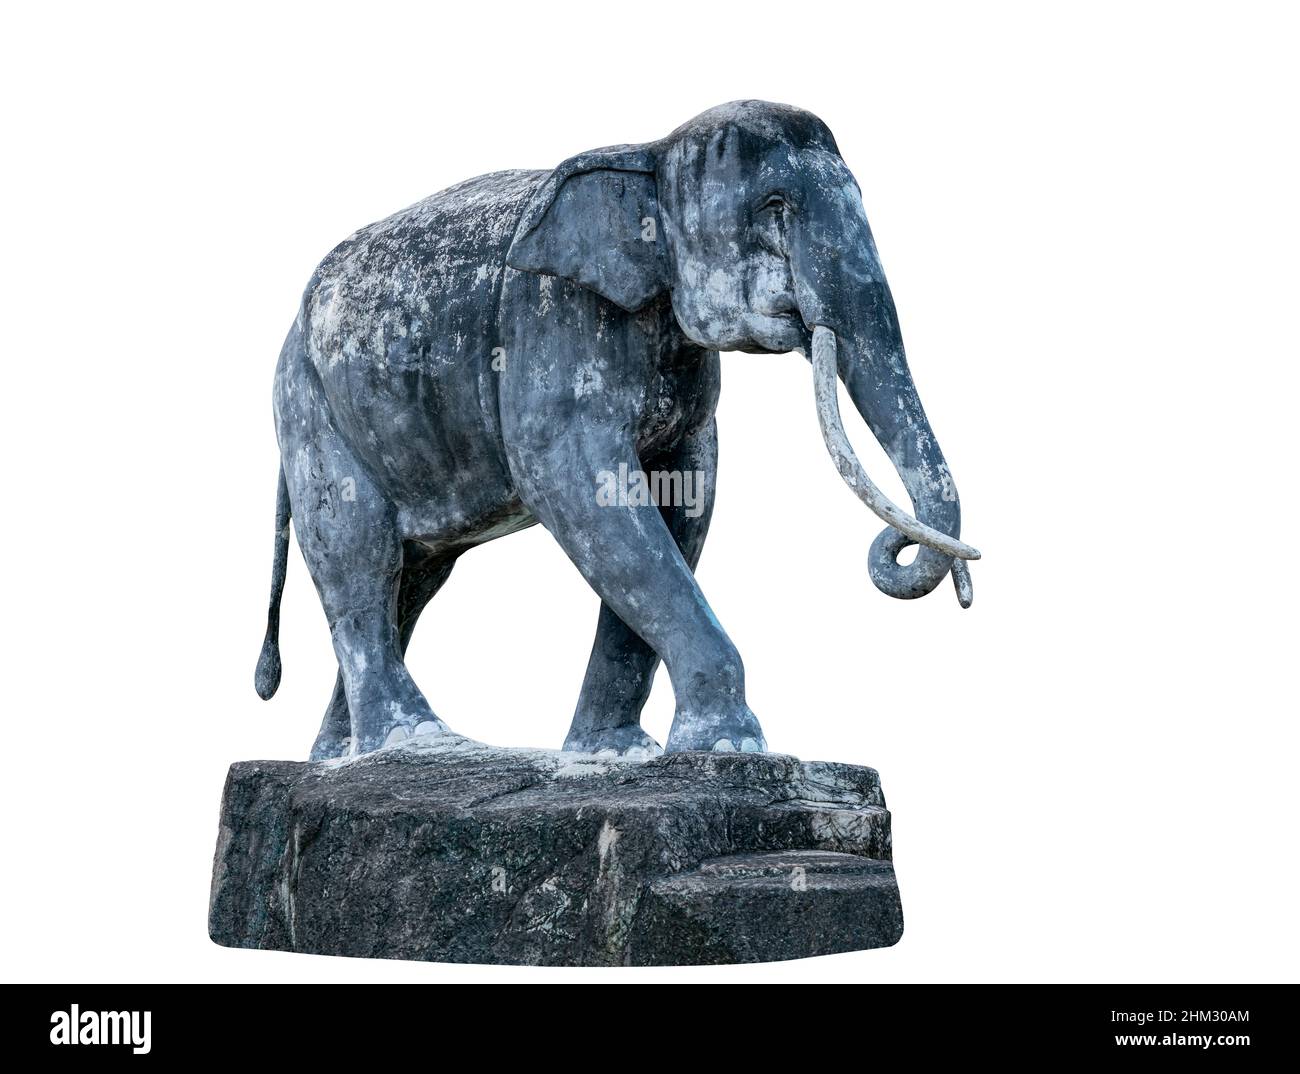 Ancienne sculpture isolée d'éléphant, plein corps et vue latérale, pierres altérées.Sculpture d'éléphant pour la décoration de jardin sur fond blanc. Banque D'Images